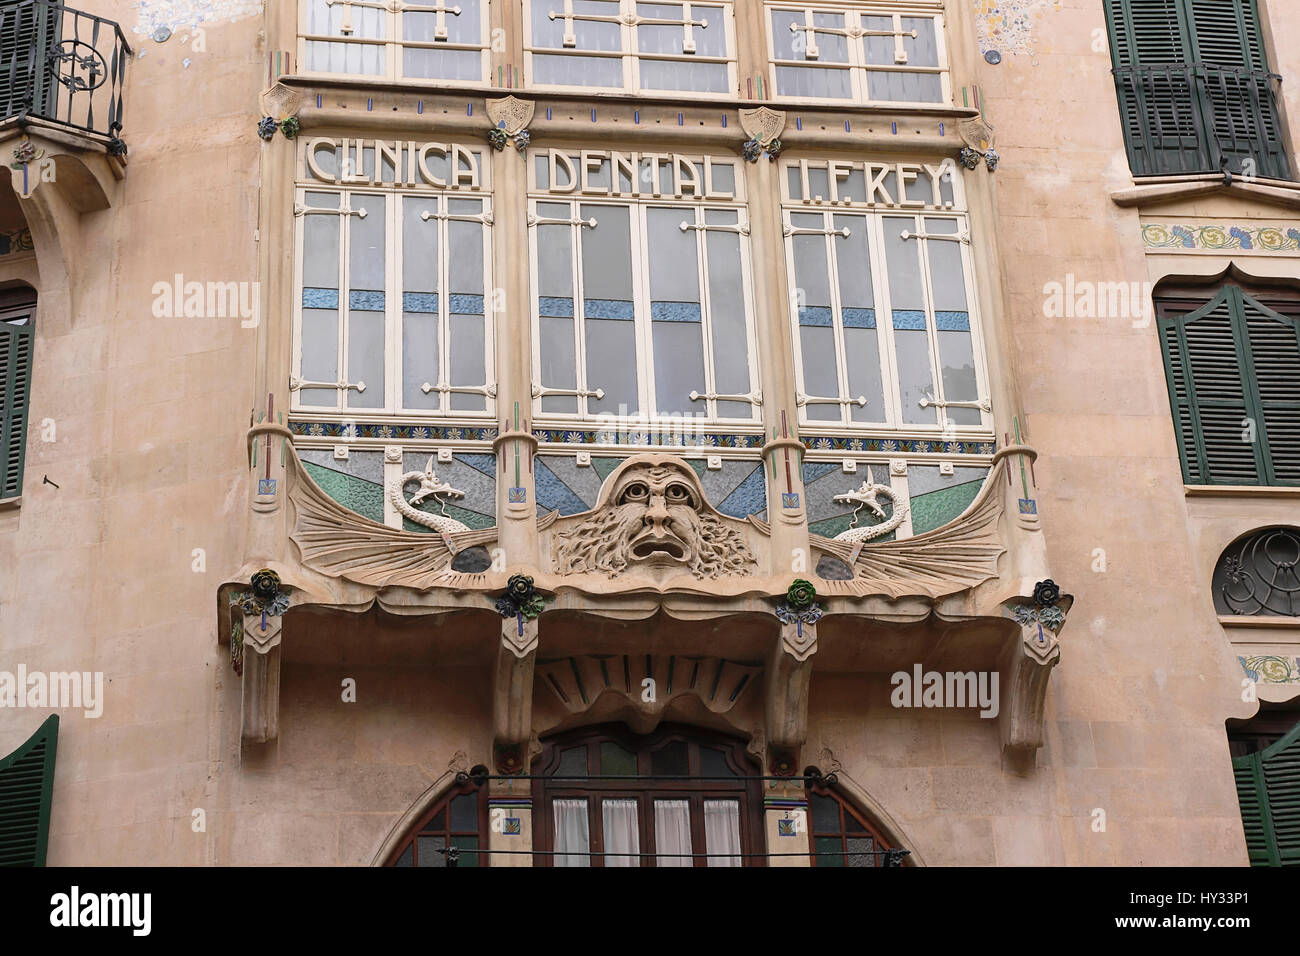 L'Espagne, Îles Baléares, Majorque, Palma, Art Nouveau visage grotesque sur une clinique dentaire dans la vieille ville. Banque D'Images